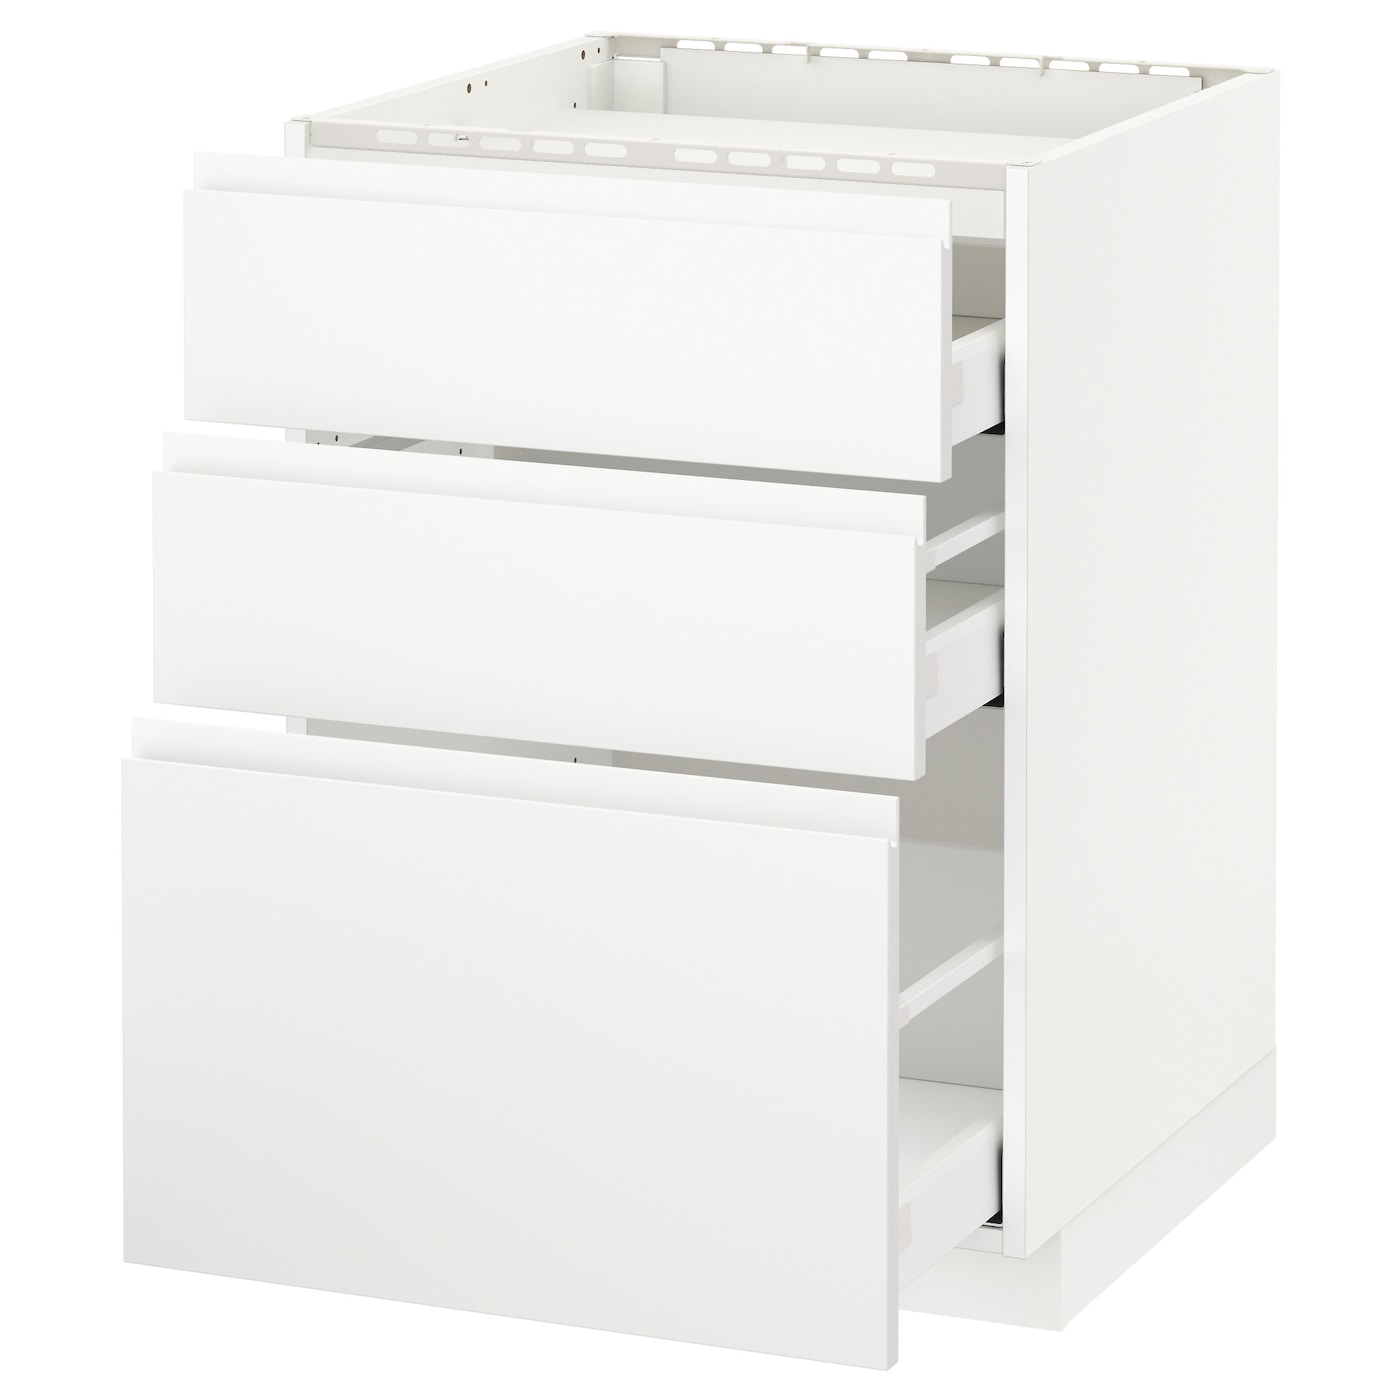 Напольный шкаф  - IKEA METOD MAXIMERA, 88x62,1x60см, белый, МЕТОД МАКСИМЕРА ИКЕА